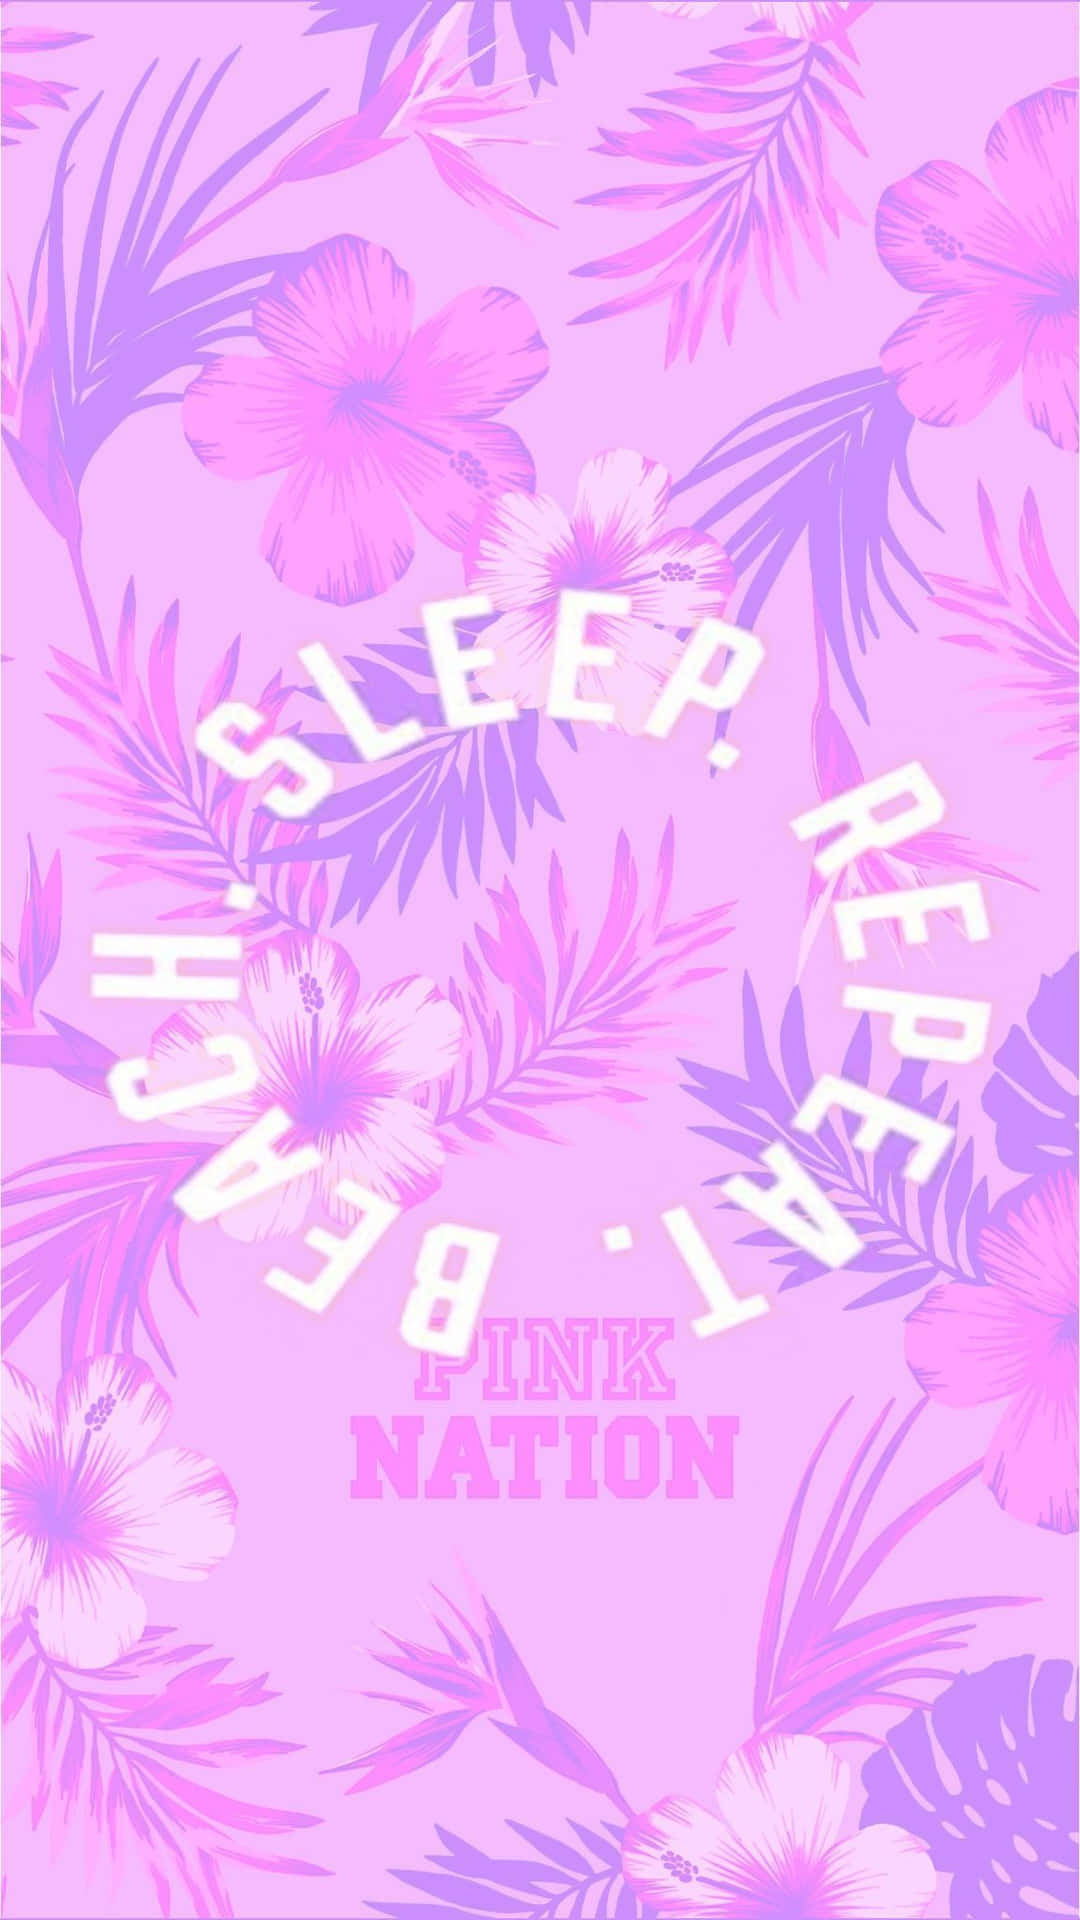 Schlafen,essen, Eine Nation Sein - Pink Wallpaper